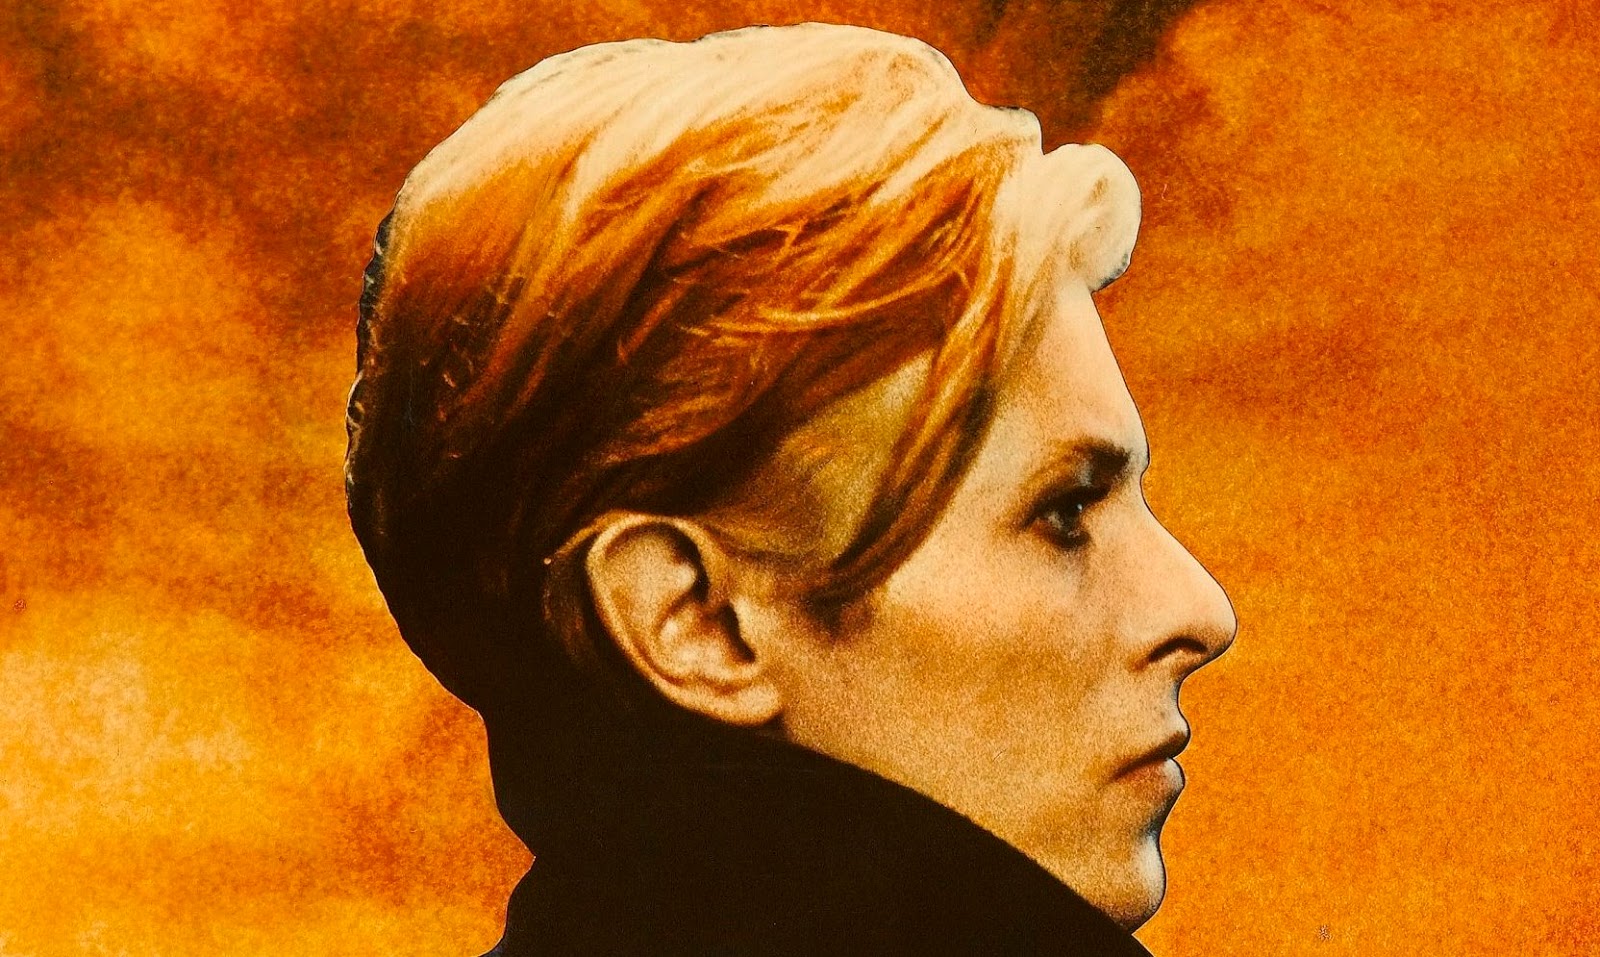 El soundtrack de ‘The Man Who Fell to Earth’ protagonizada por David Bowie será publicado por primera vez